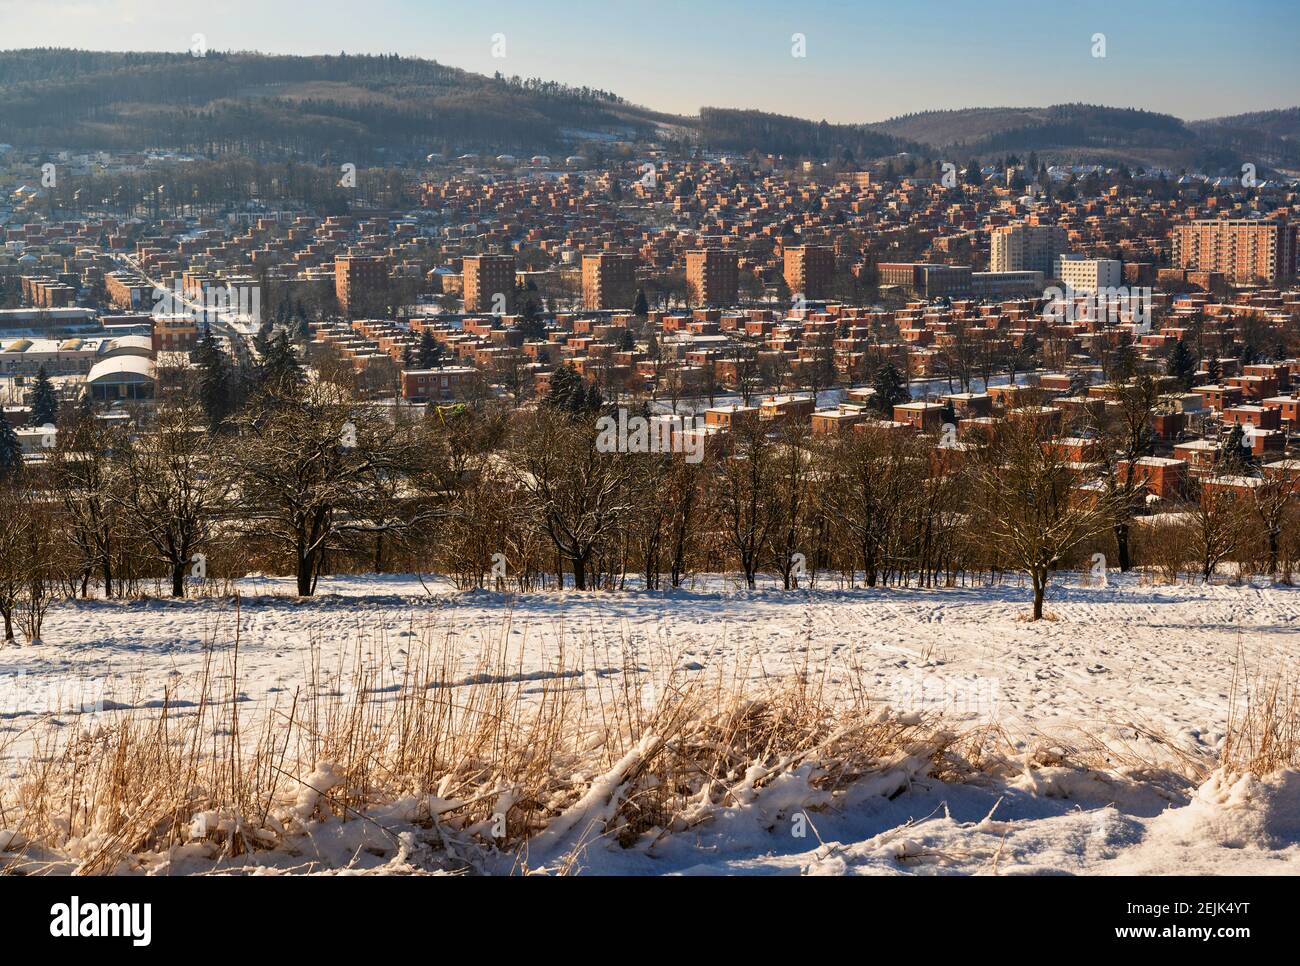 Maisons en briques rouges, typiques pour l'architecture unique dans la ville de Zlin, vue d'hiver de la zone résidentielle avec des collines. République tchèque. Banque D'Images